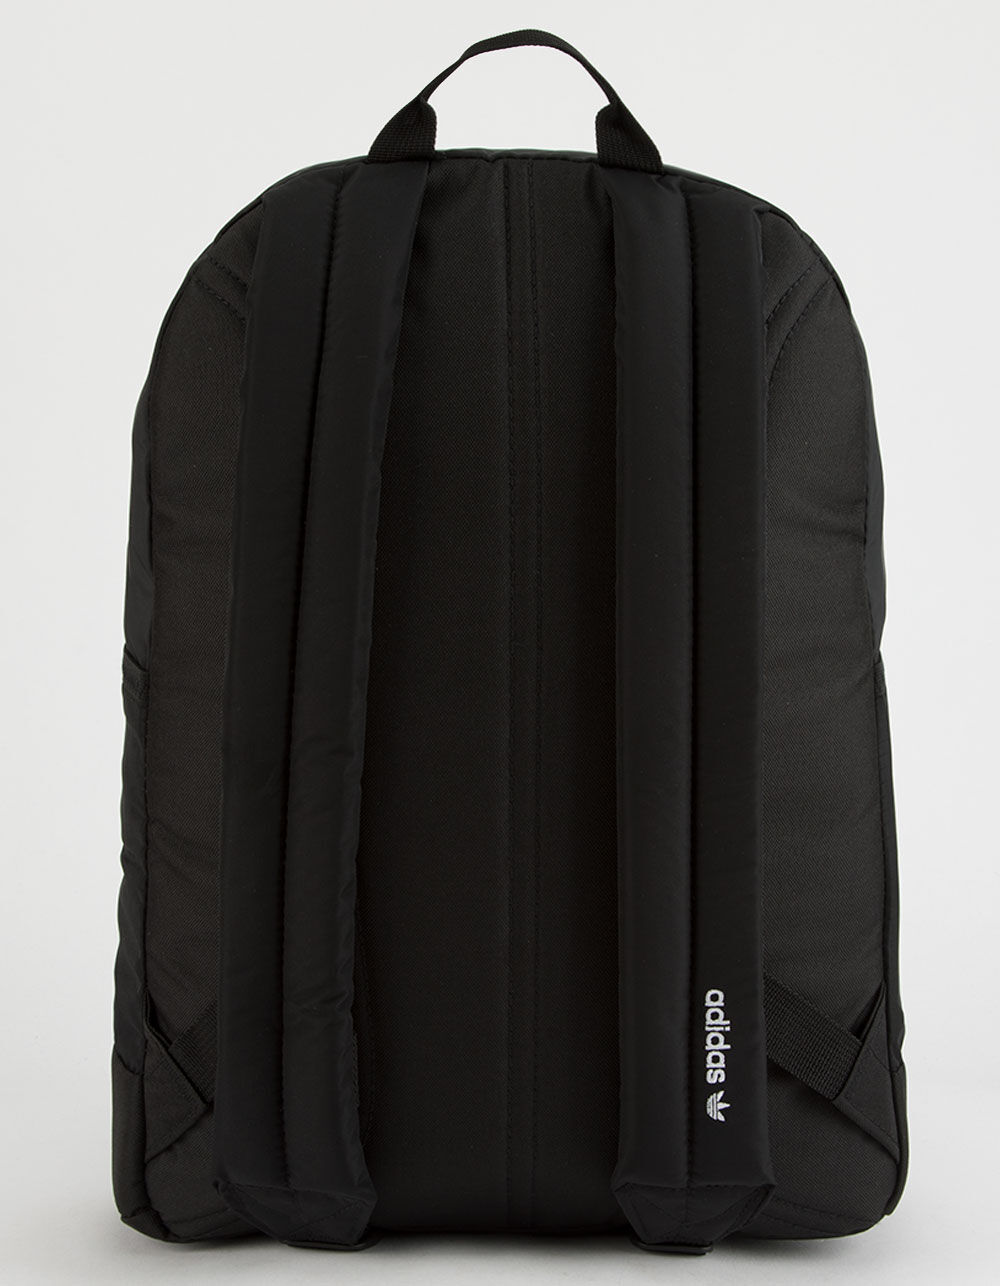 ADIDAS Originals National Black Backpack - BLACK | Tillys